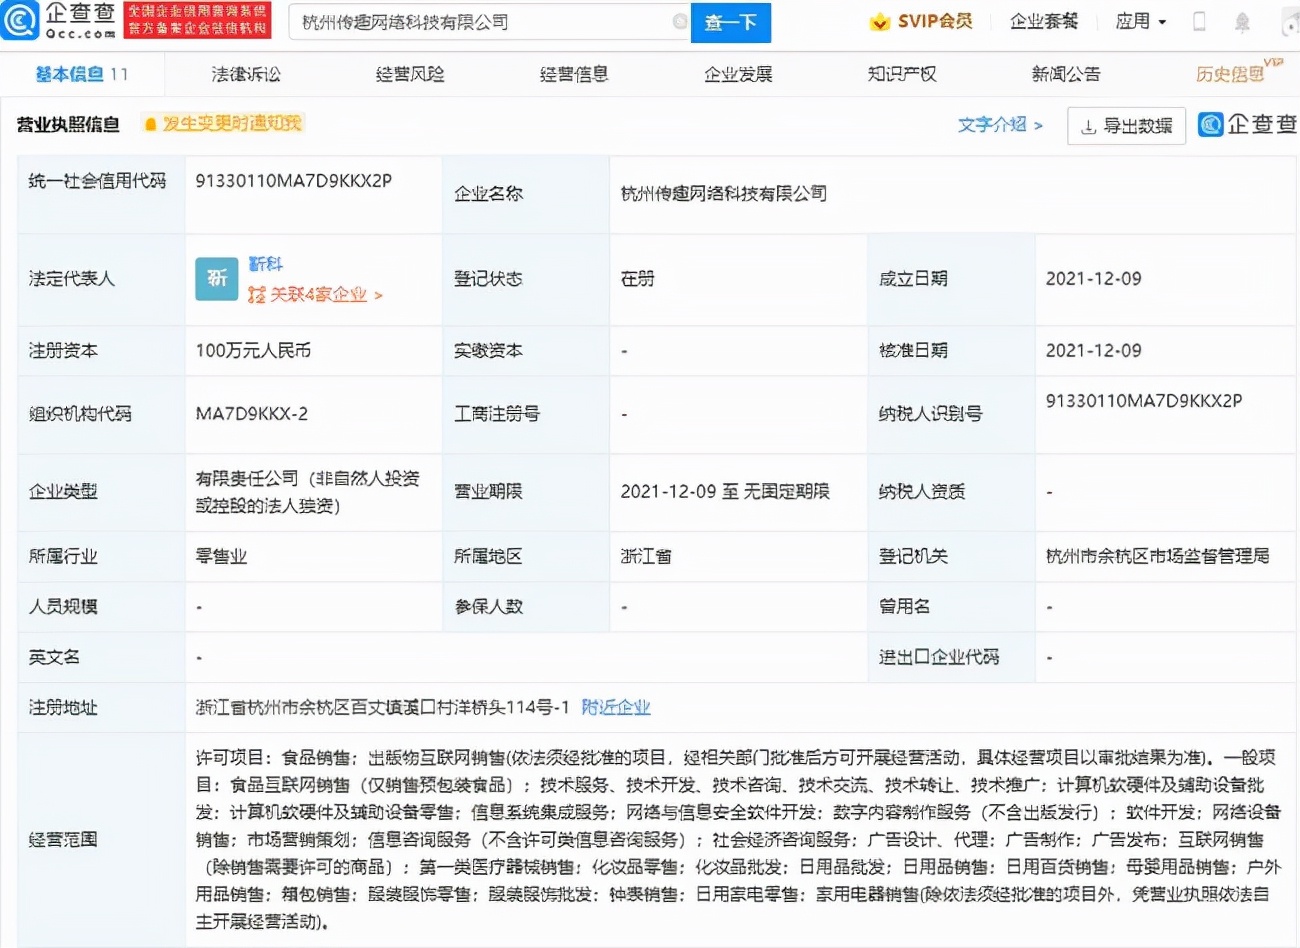 顺丰同城将以下限16.42港元定价,中国邮政EMS年快递量突破100亿件